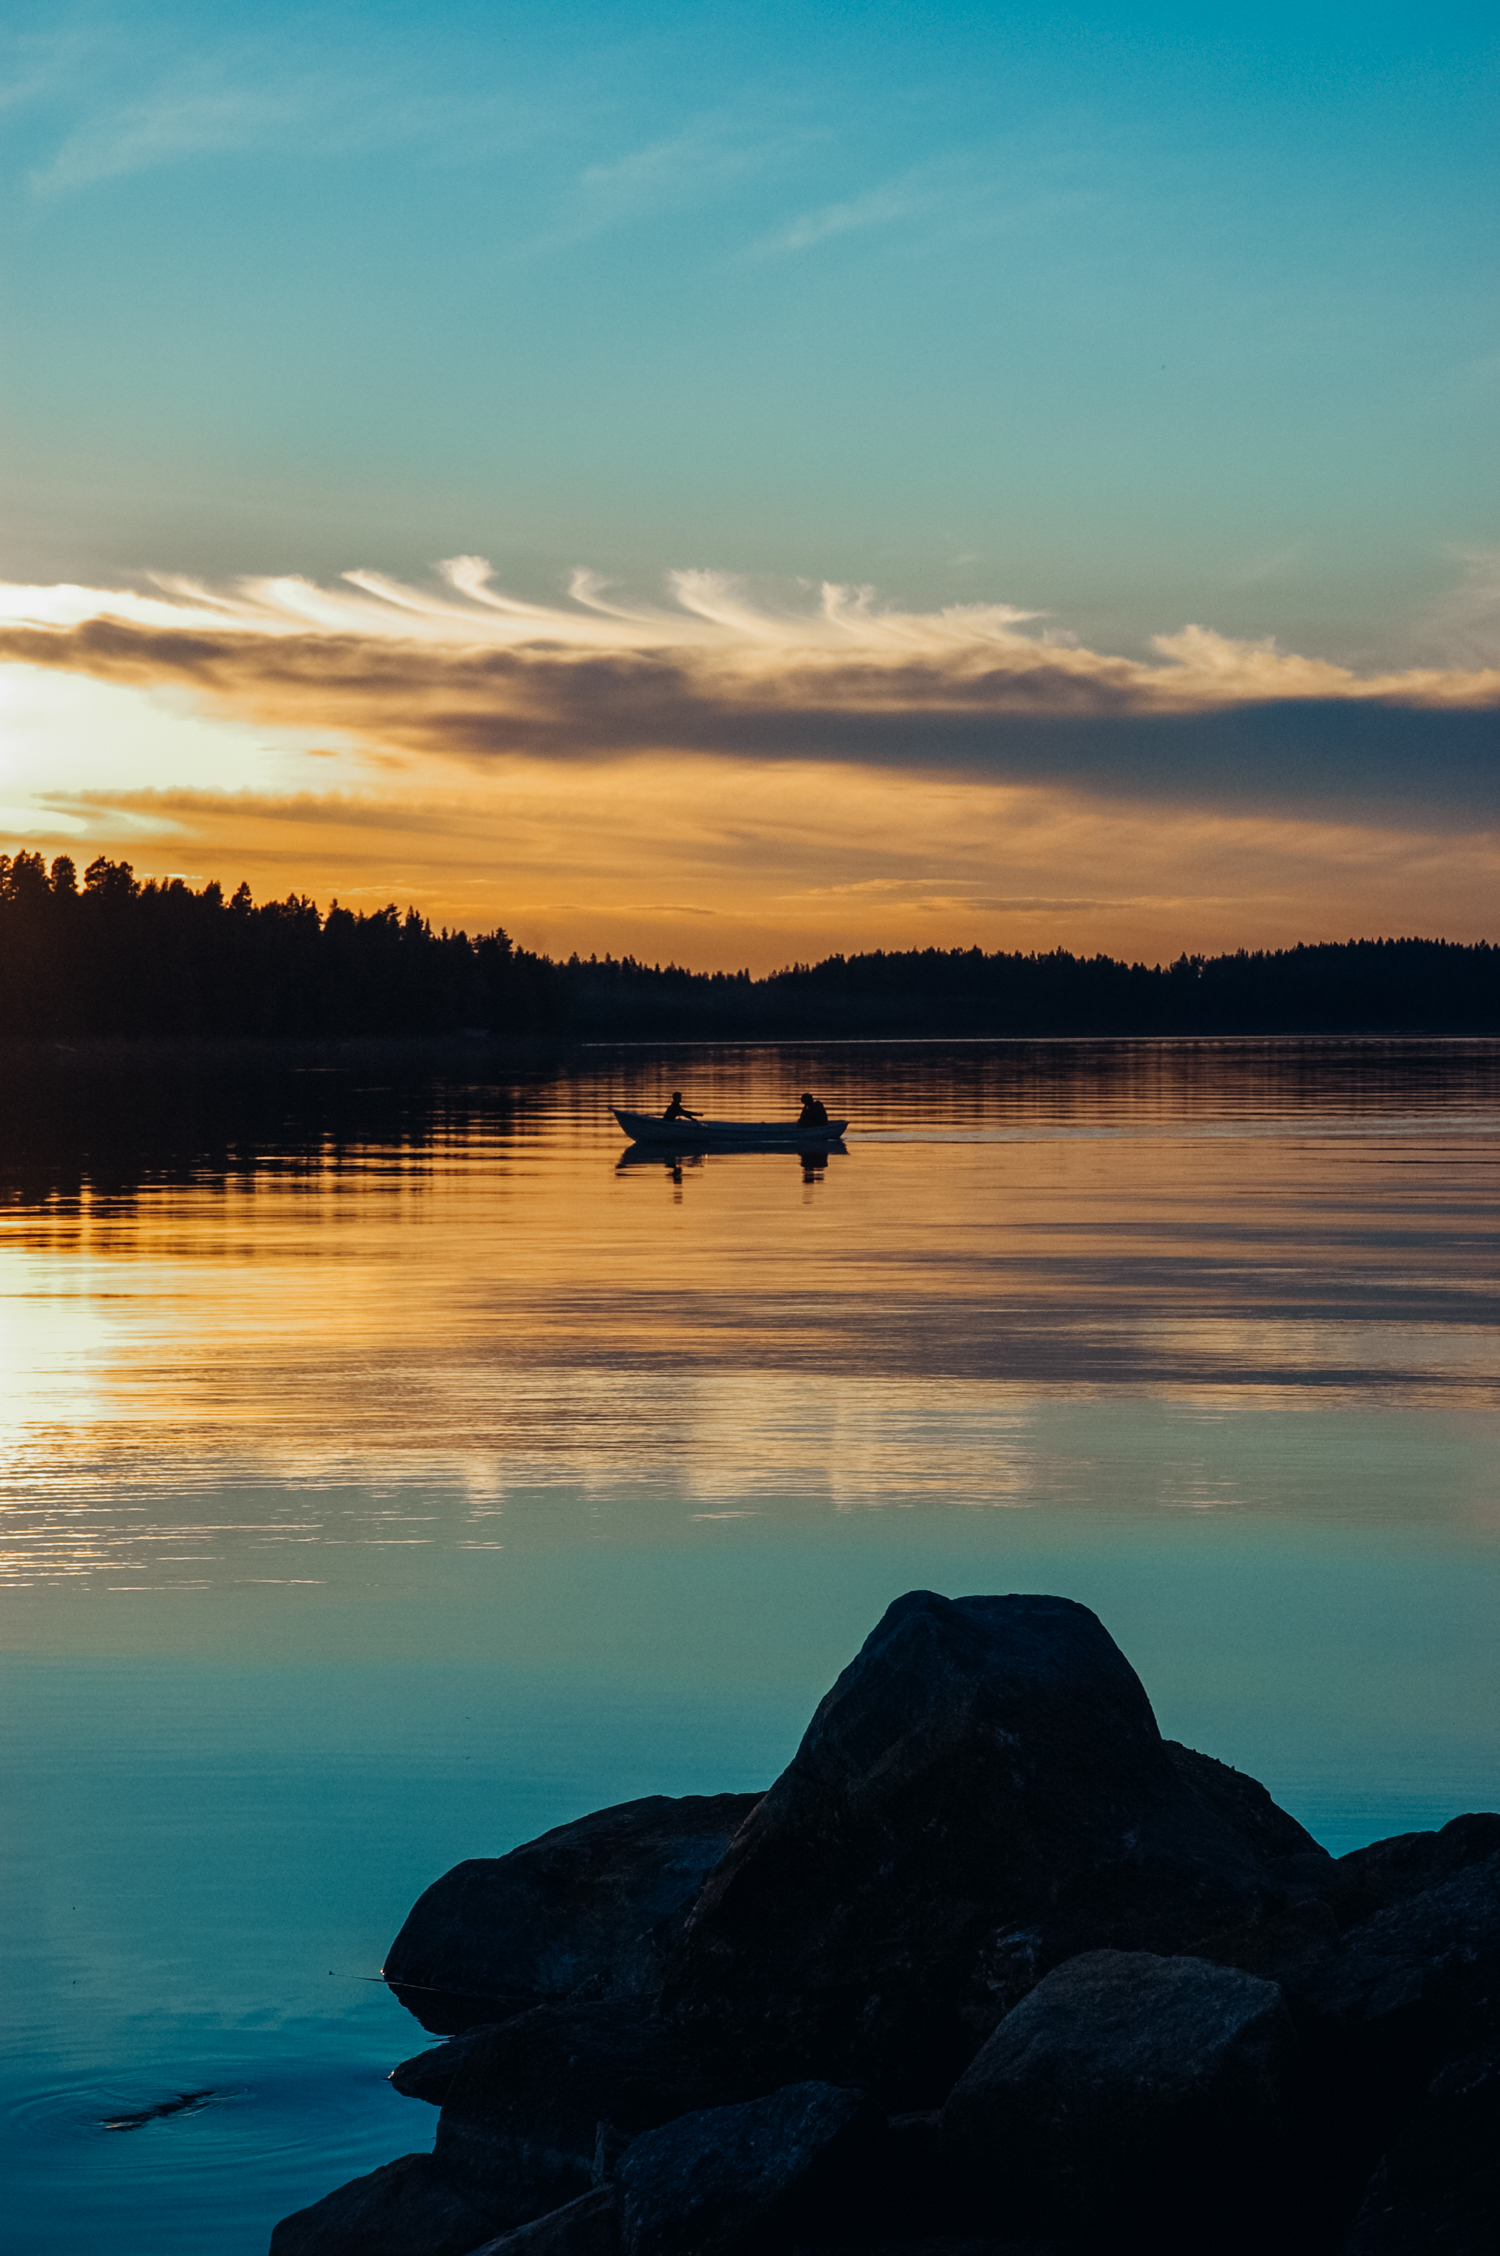 Lakeland Finland- Marianna Jamadi-23.jpg